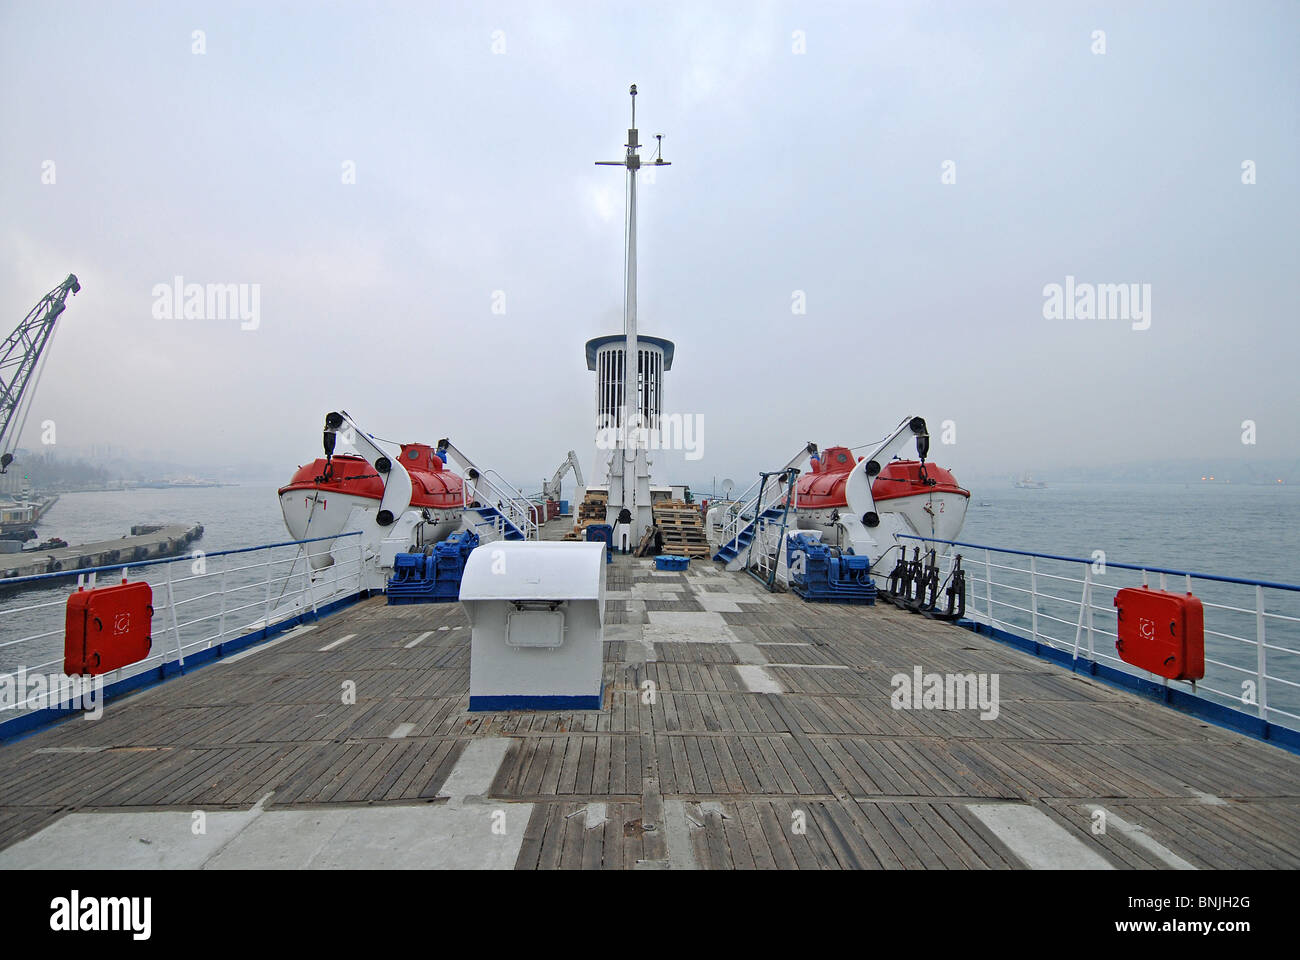 Türkei Istanbul Bosporus Schiff Schiff Rettungsboote Nebel Nebel schlechtes Wetter grau grau Nebel Misty Navigation Deck Transport Stockfoto